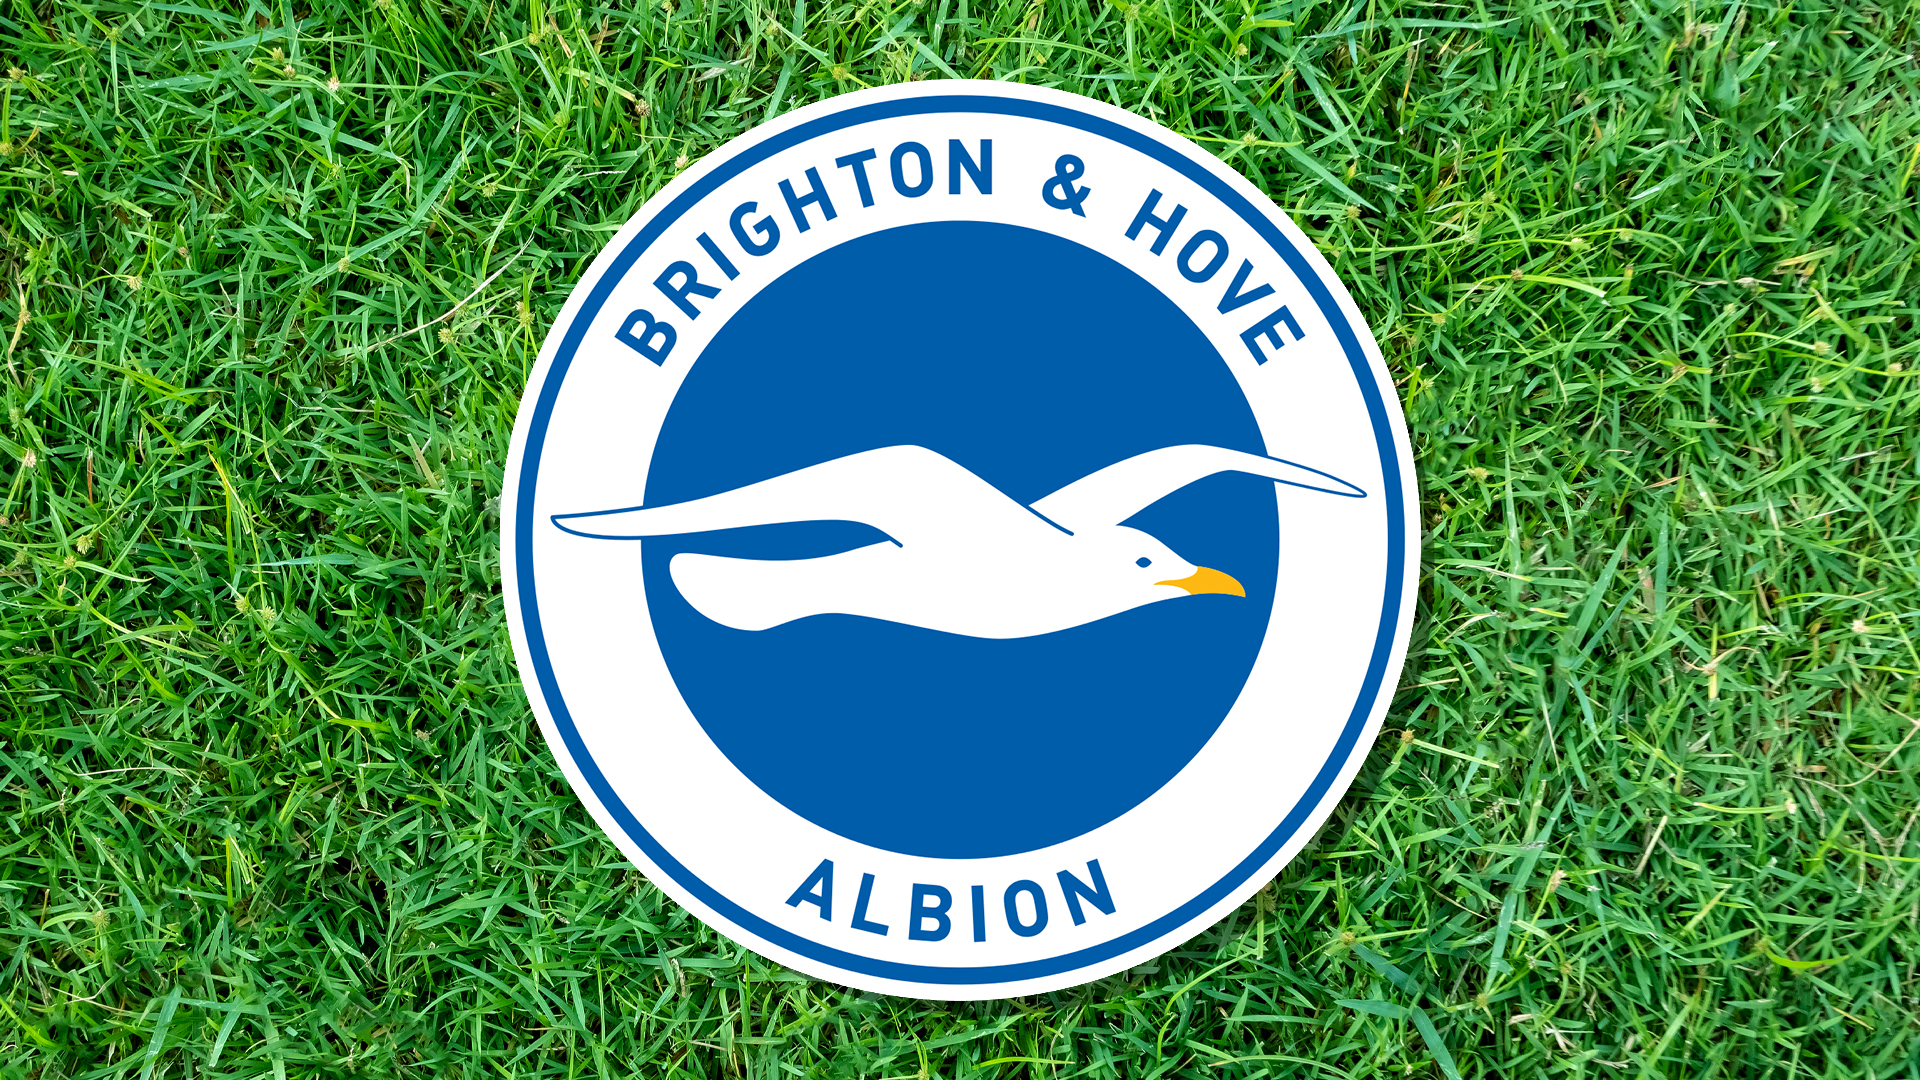 Brighton & Hove Albion